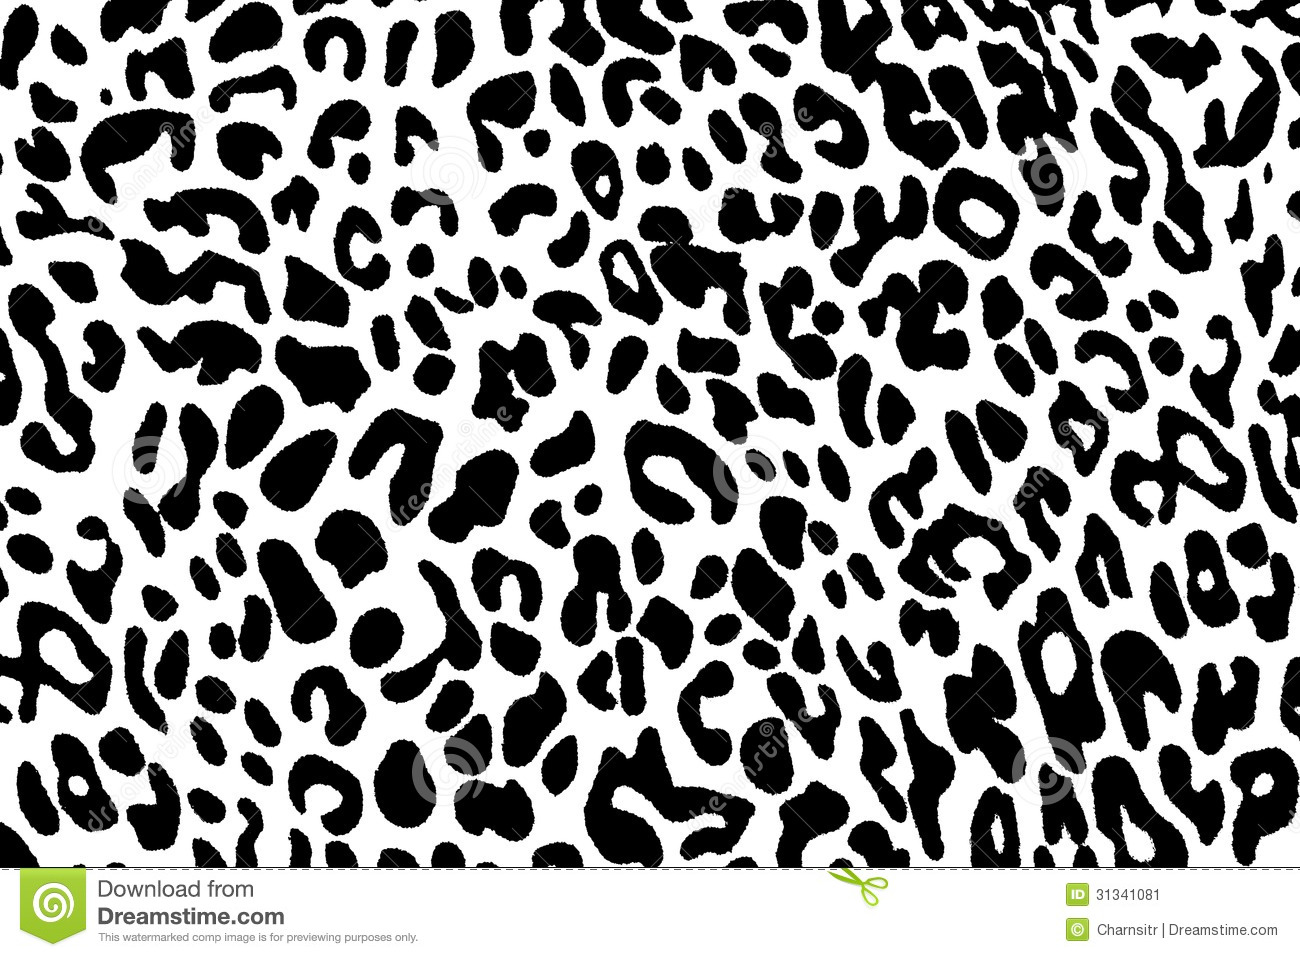 Black Cheetah Wallpaper - WallpaperSafari